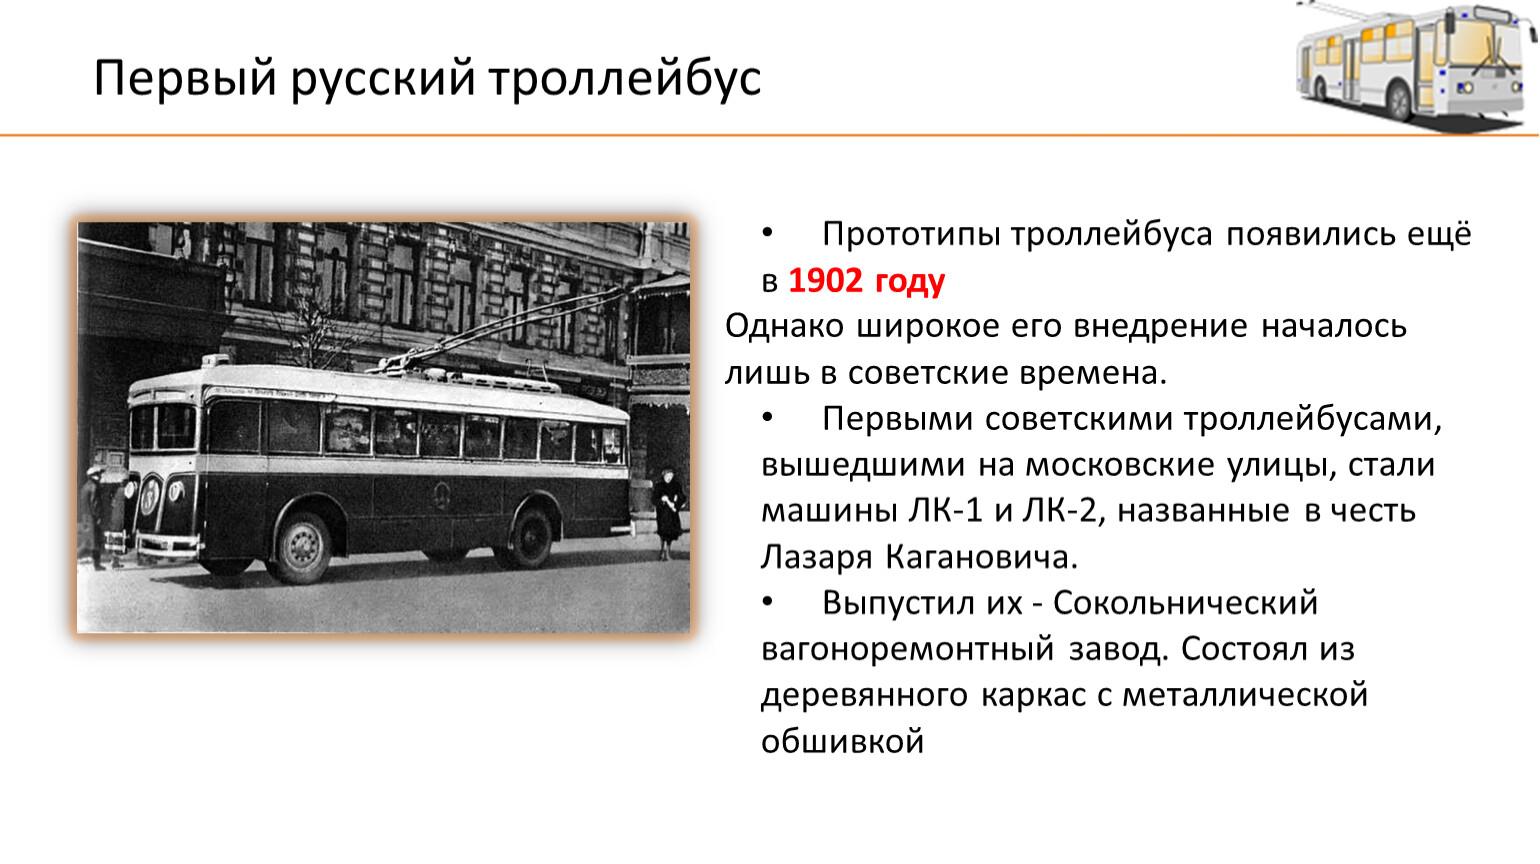 Когда появился троллейбус. Загадка про троллейбус. Загадка про троллейбус для детей. История российских троллейбусов. Ребус троллейбус.